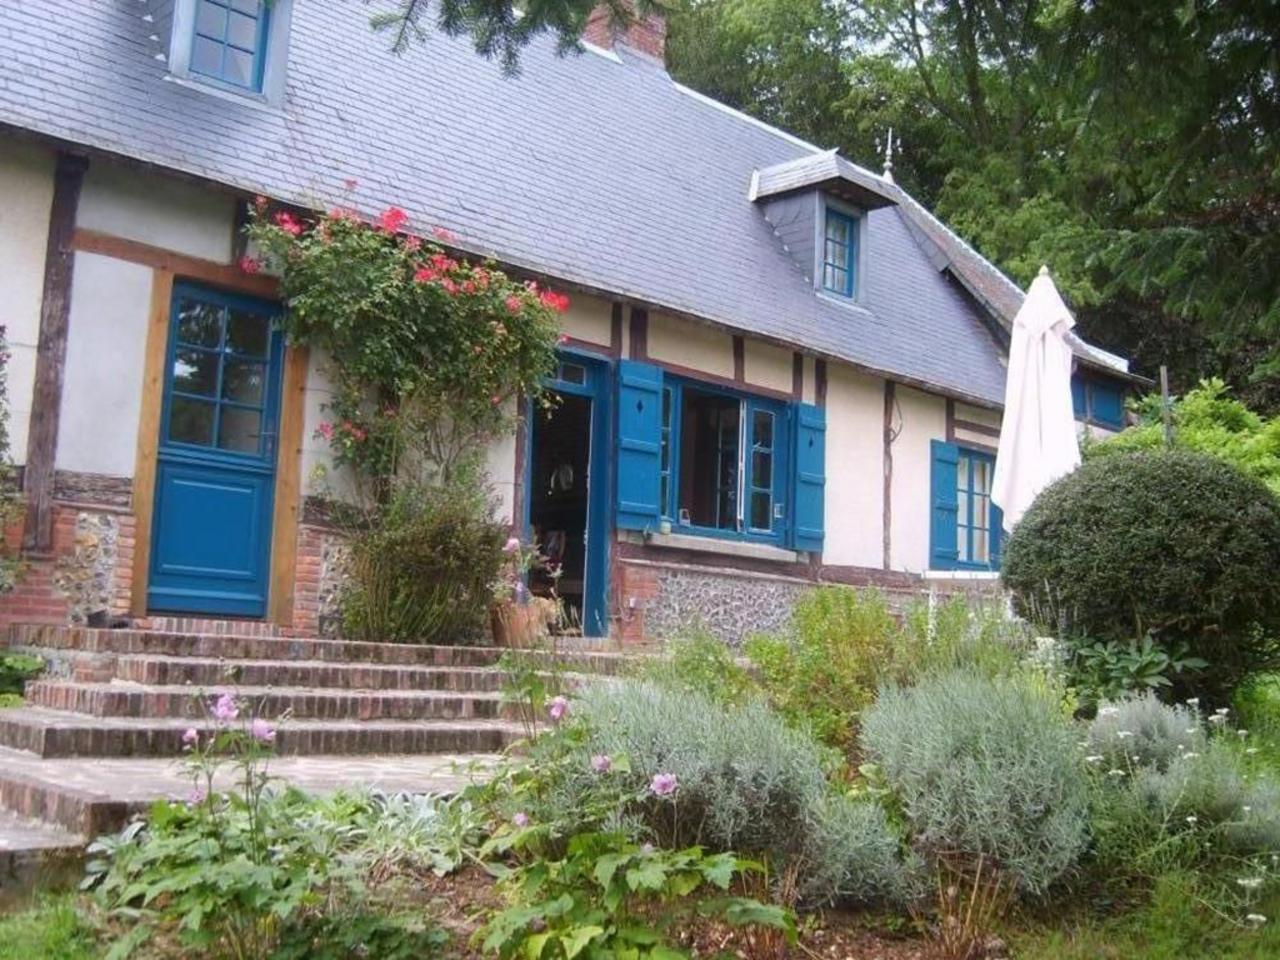 Jolie Maison Traditionnelle, Rénovée, Calme Assuré - Haute-Normandie